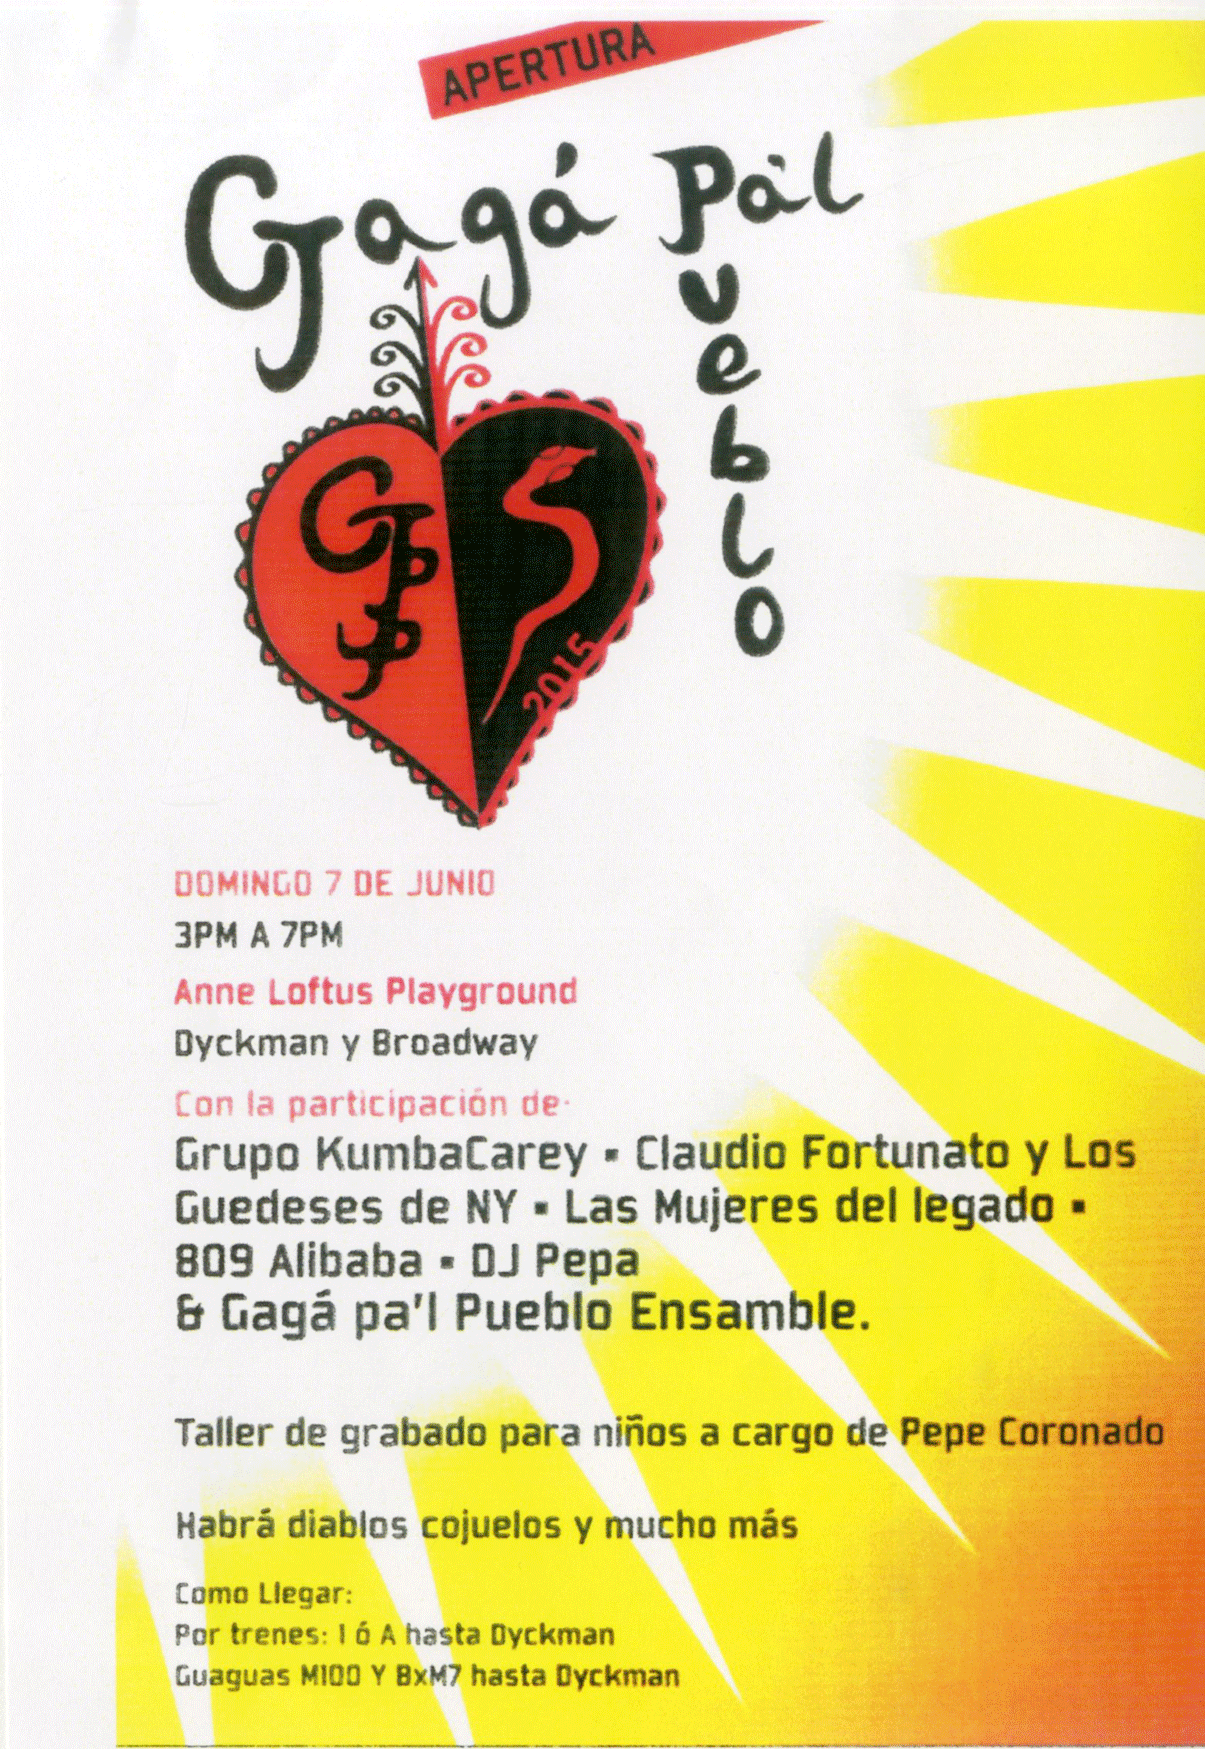 Gagá Pa'l Pueblo Event Flyer, June 7, 2015